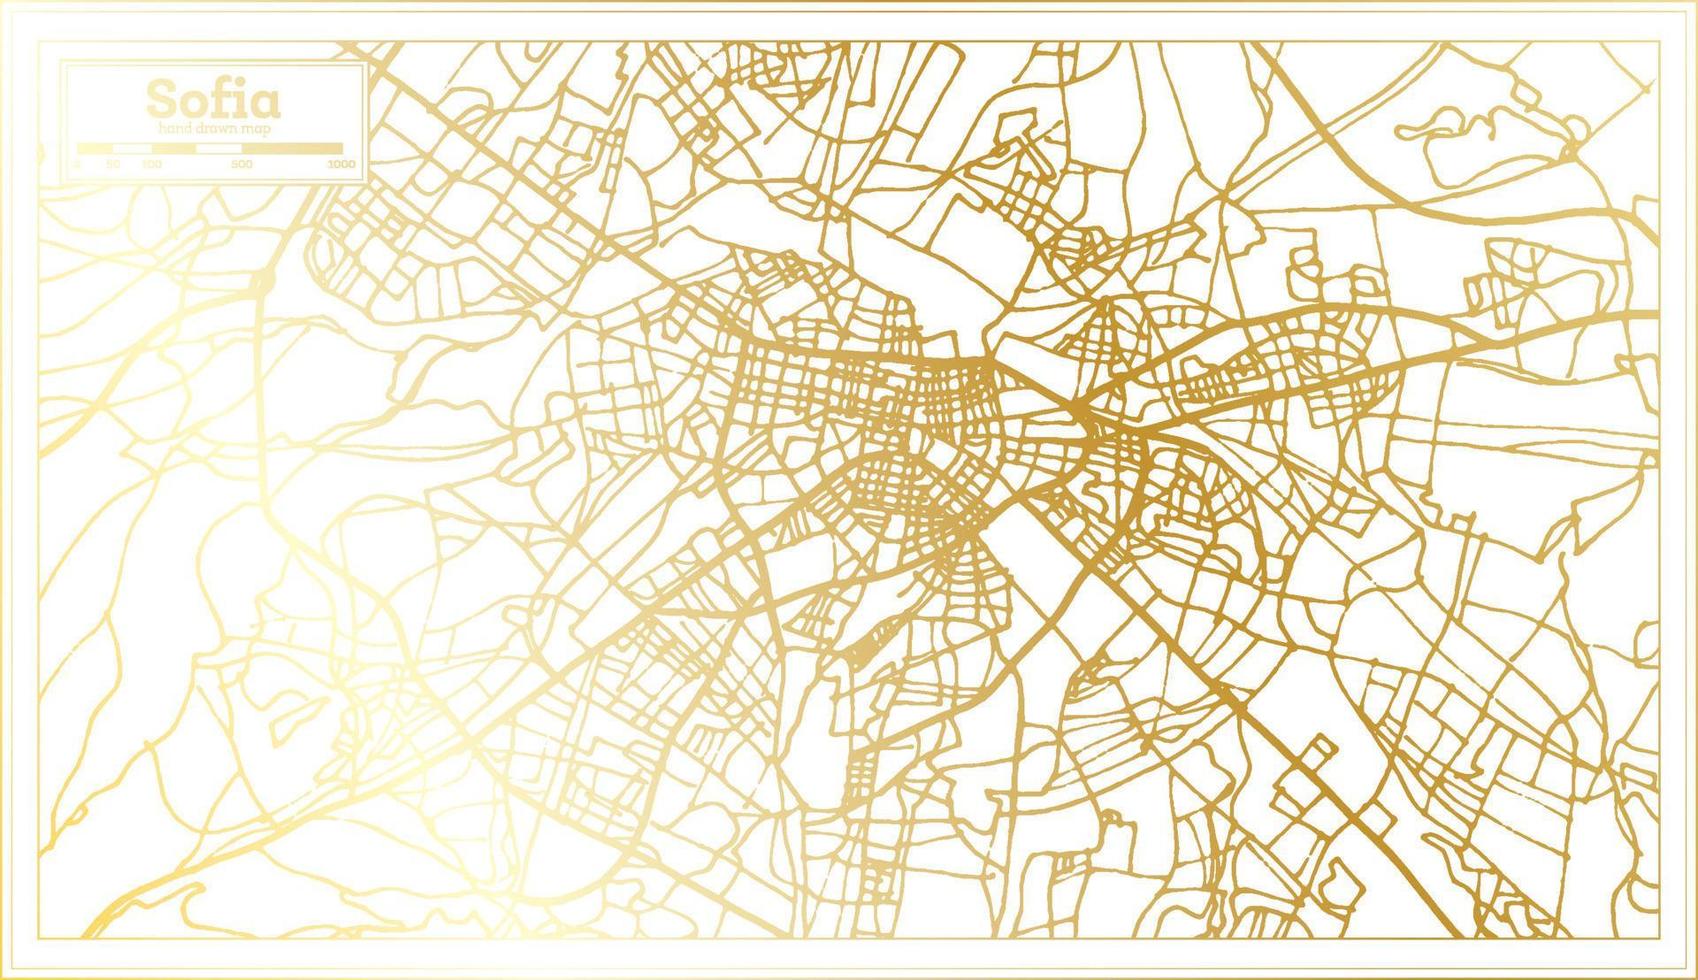 Sofia bulgarije stad kaart in retro stijl in gouden kleur. schets kaart. vector